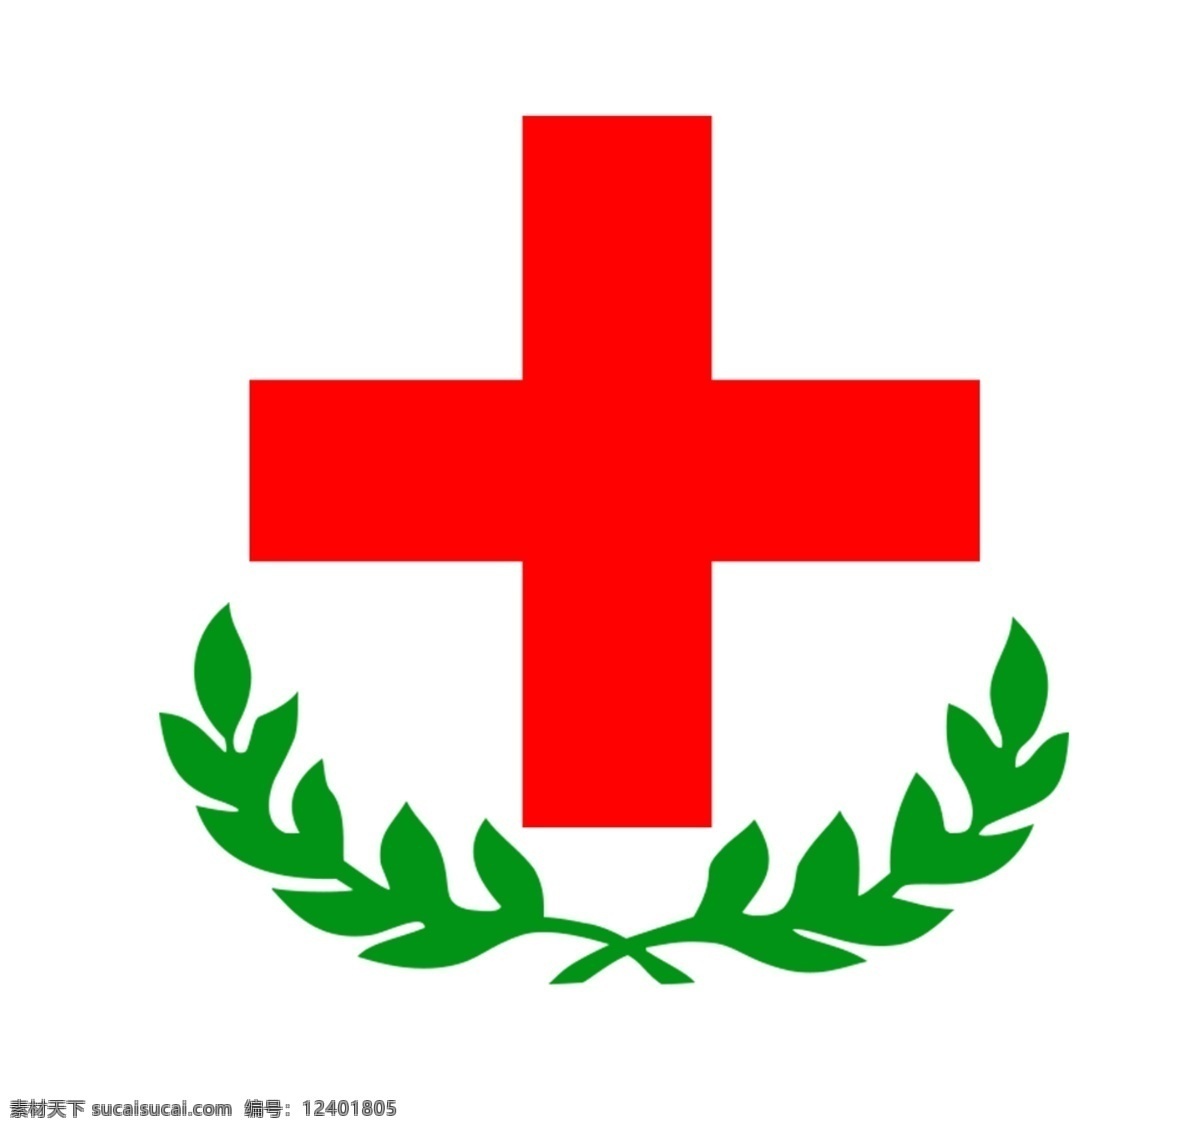 联华医药 华联医药 logo 医疗 红十字 标志 标志图标 企业